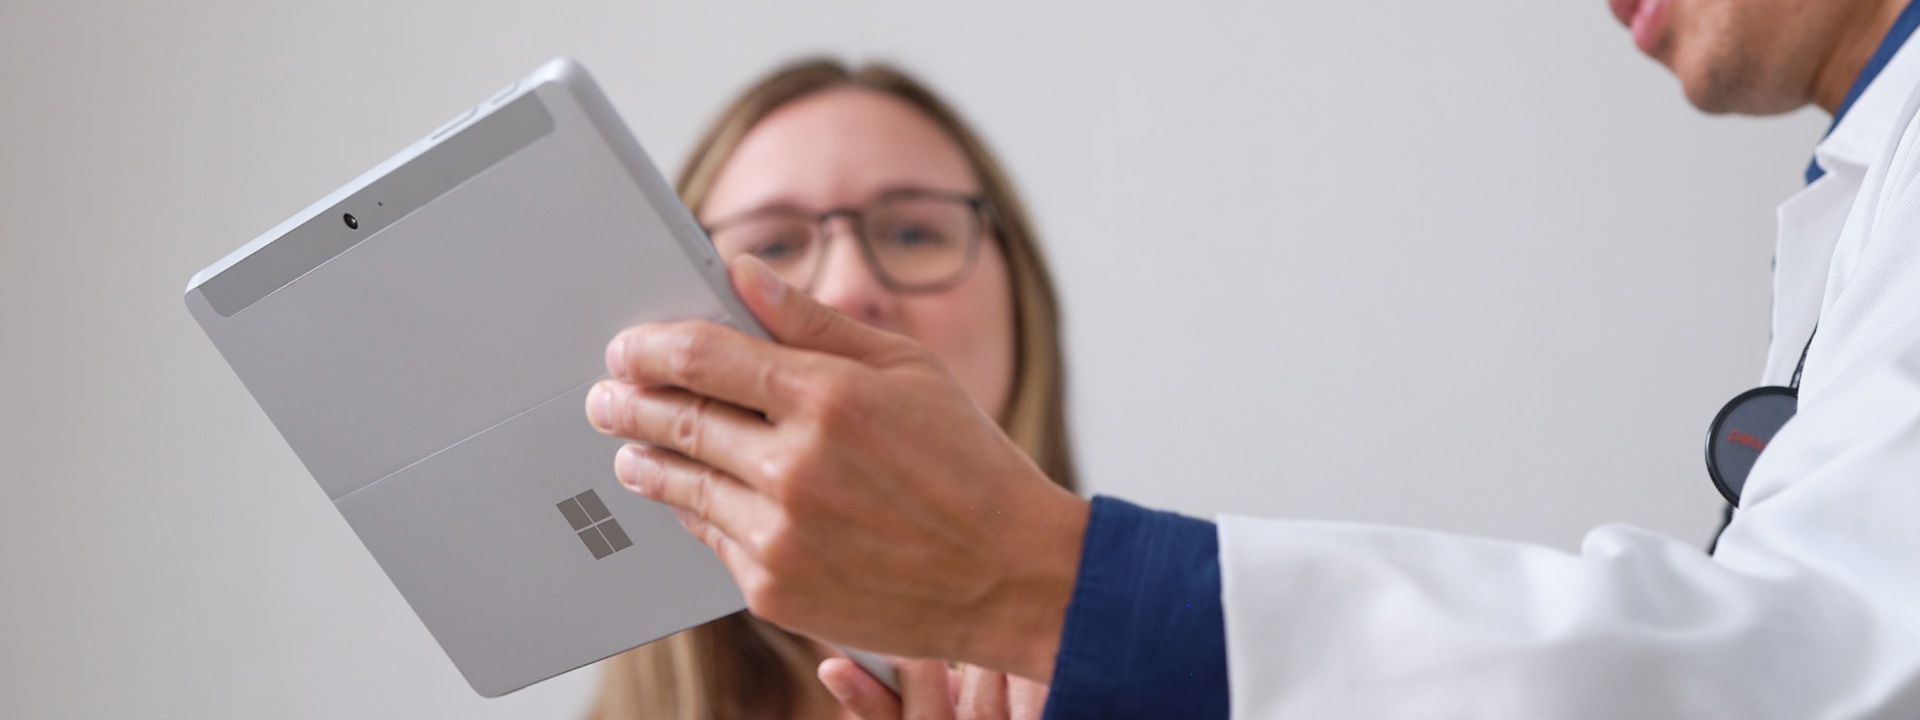 Ένας γιατρός παρουσιάζει σε έναν ασθενή το πρόγραμμα θεραπείας του σε ένα Surface Pro